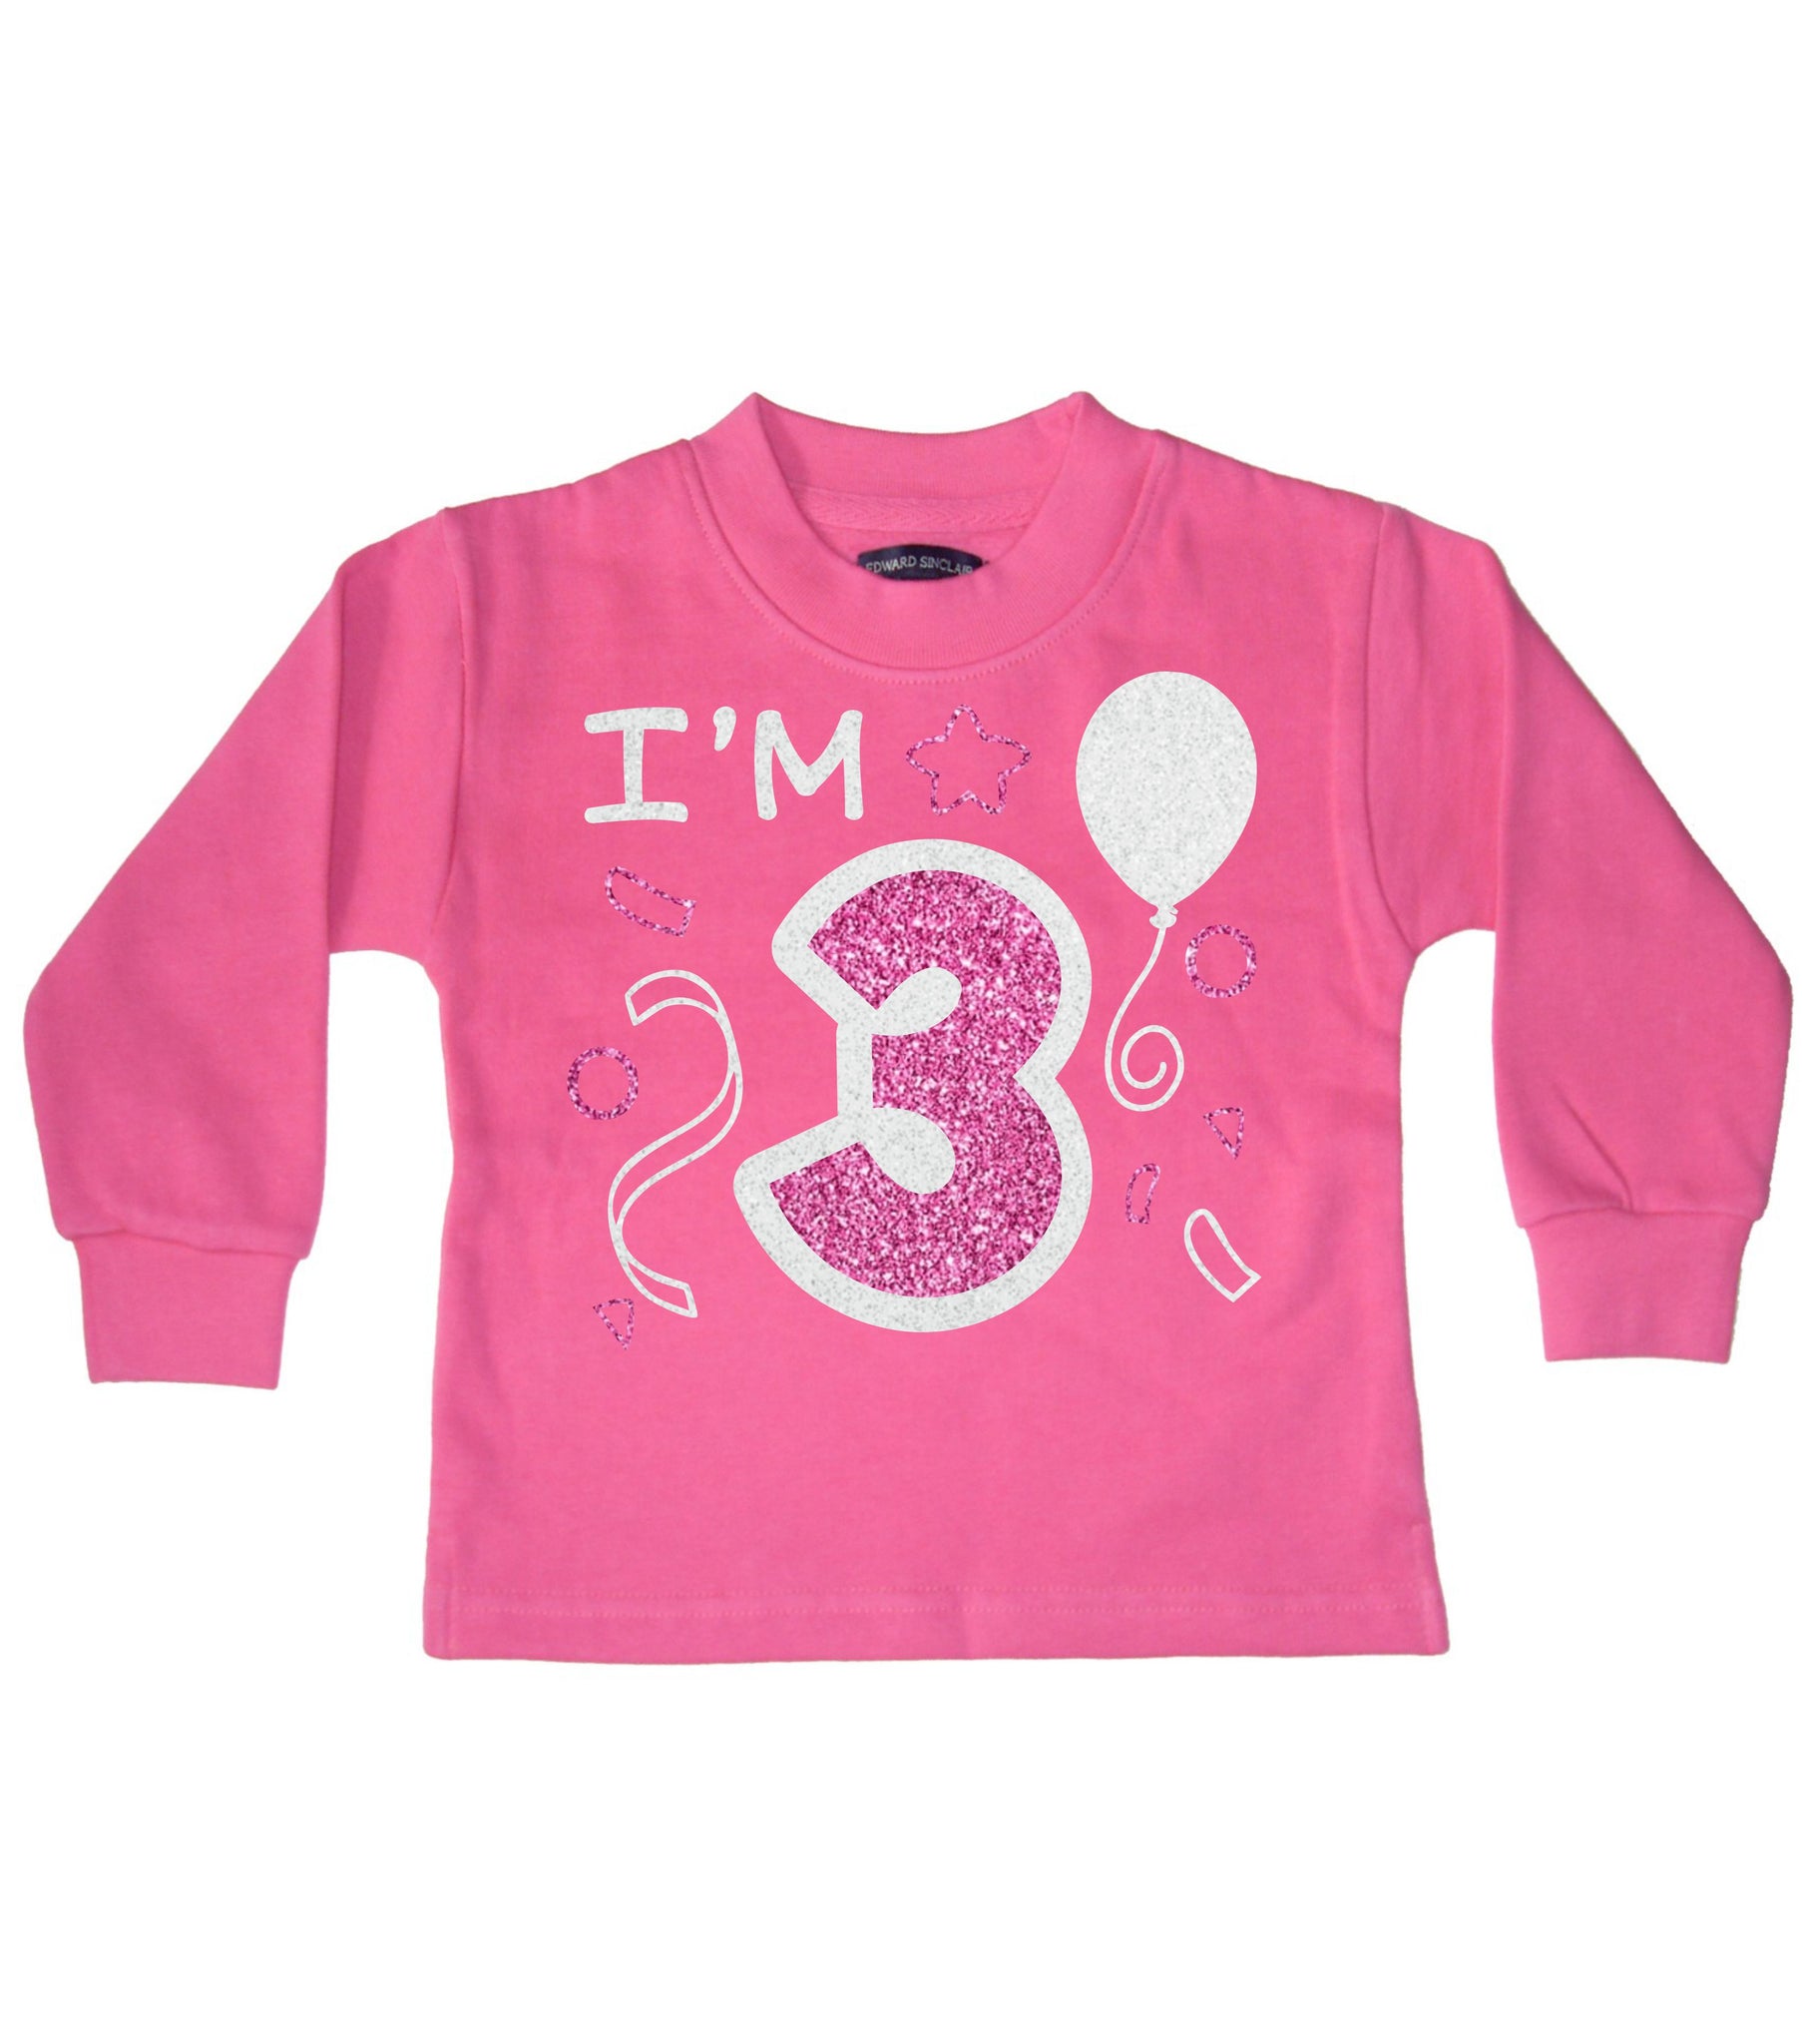 J'ai 3 ans Sweat-shirt d'anniversaire pour enfant rose bonbon 